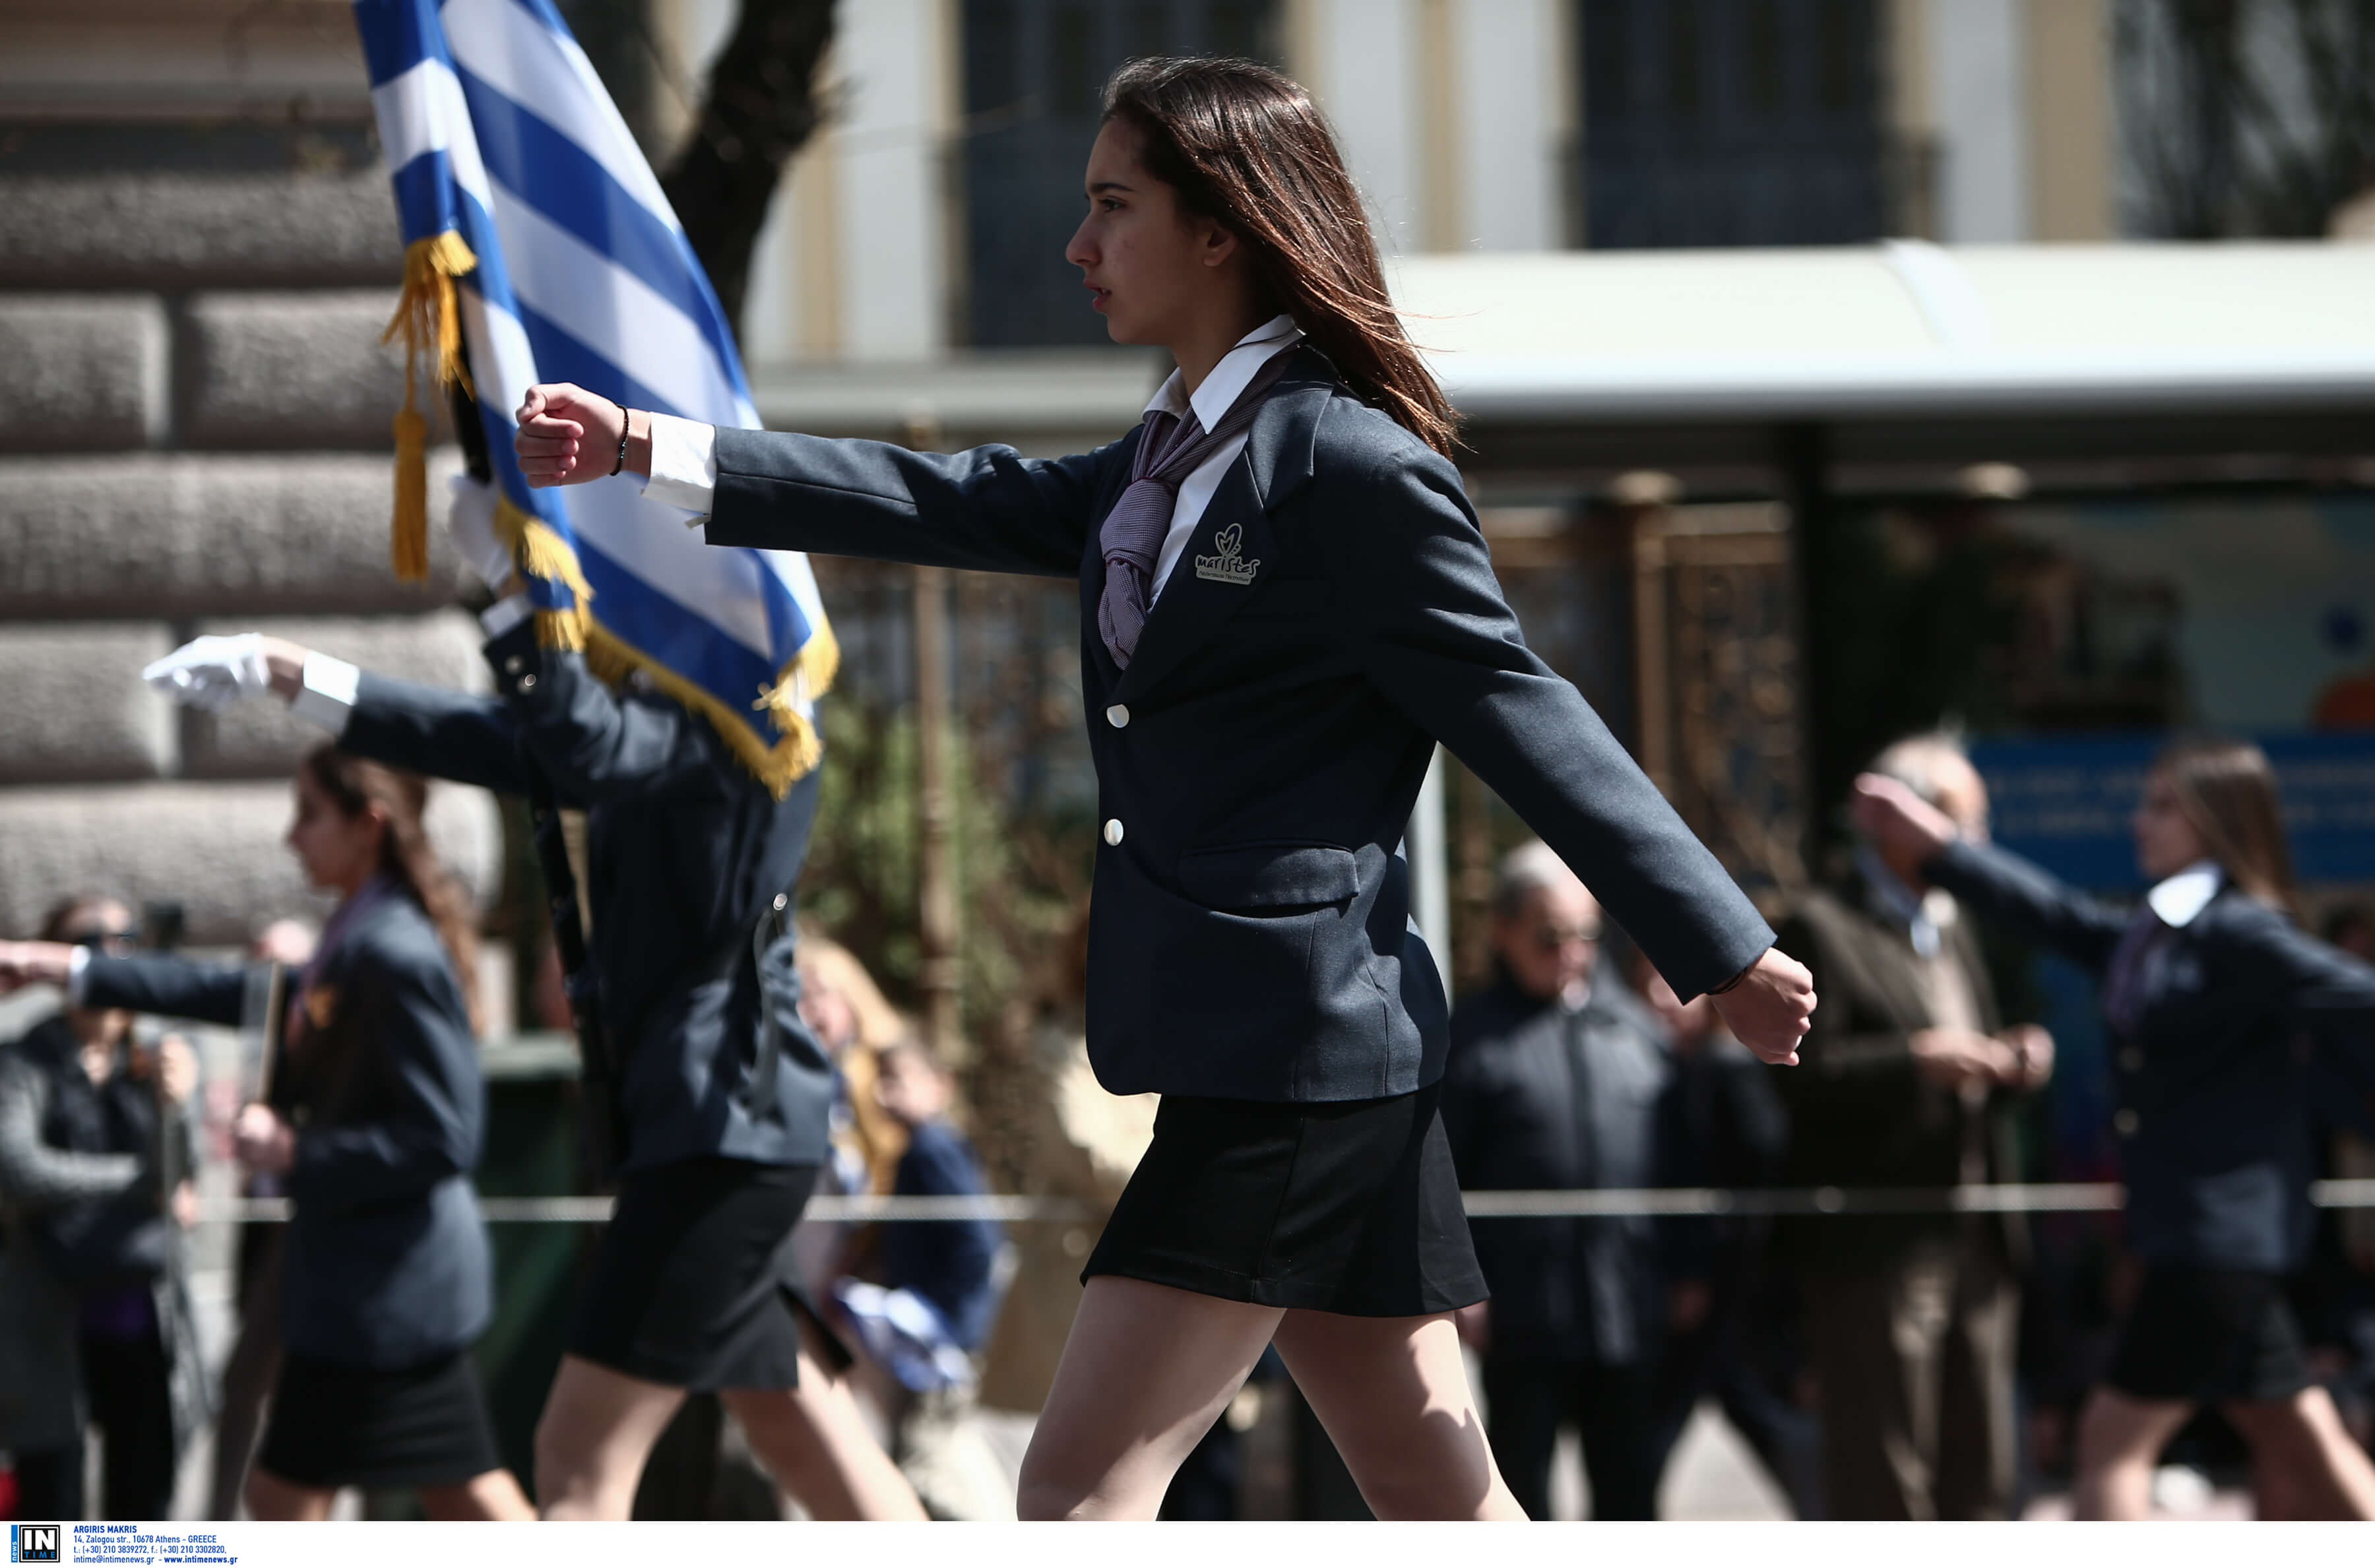 Δεν ακούστηκε το “Μακεδονία ξακουστή” στη μαθητική παρέλαση στο Σύνταγμα – Τι απαντά ο Γαβρόγλου – video